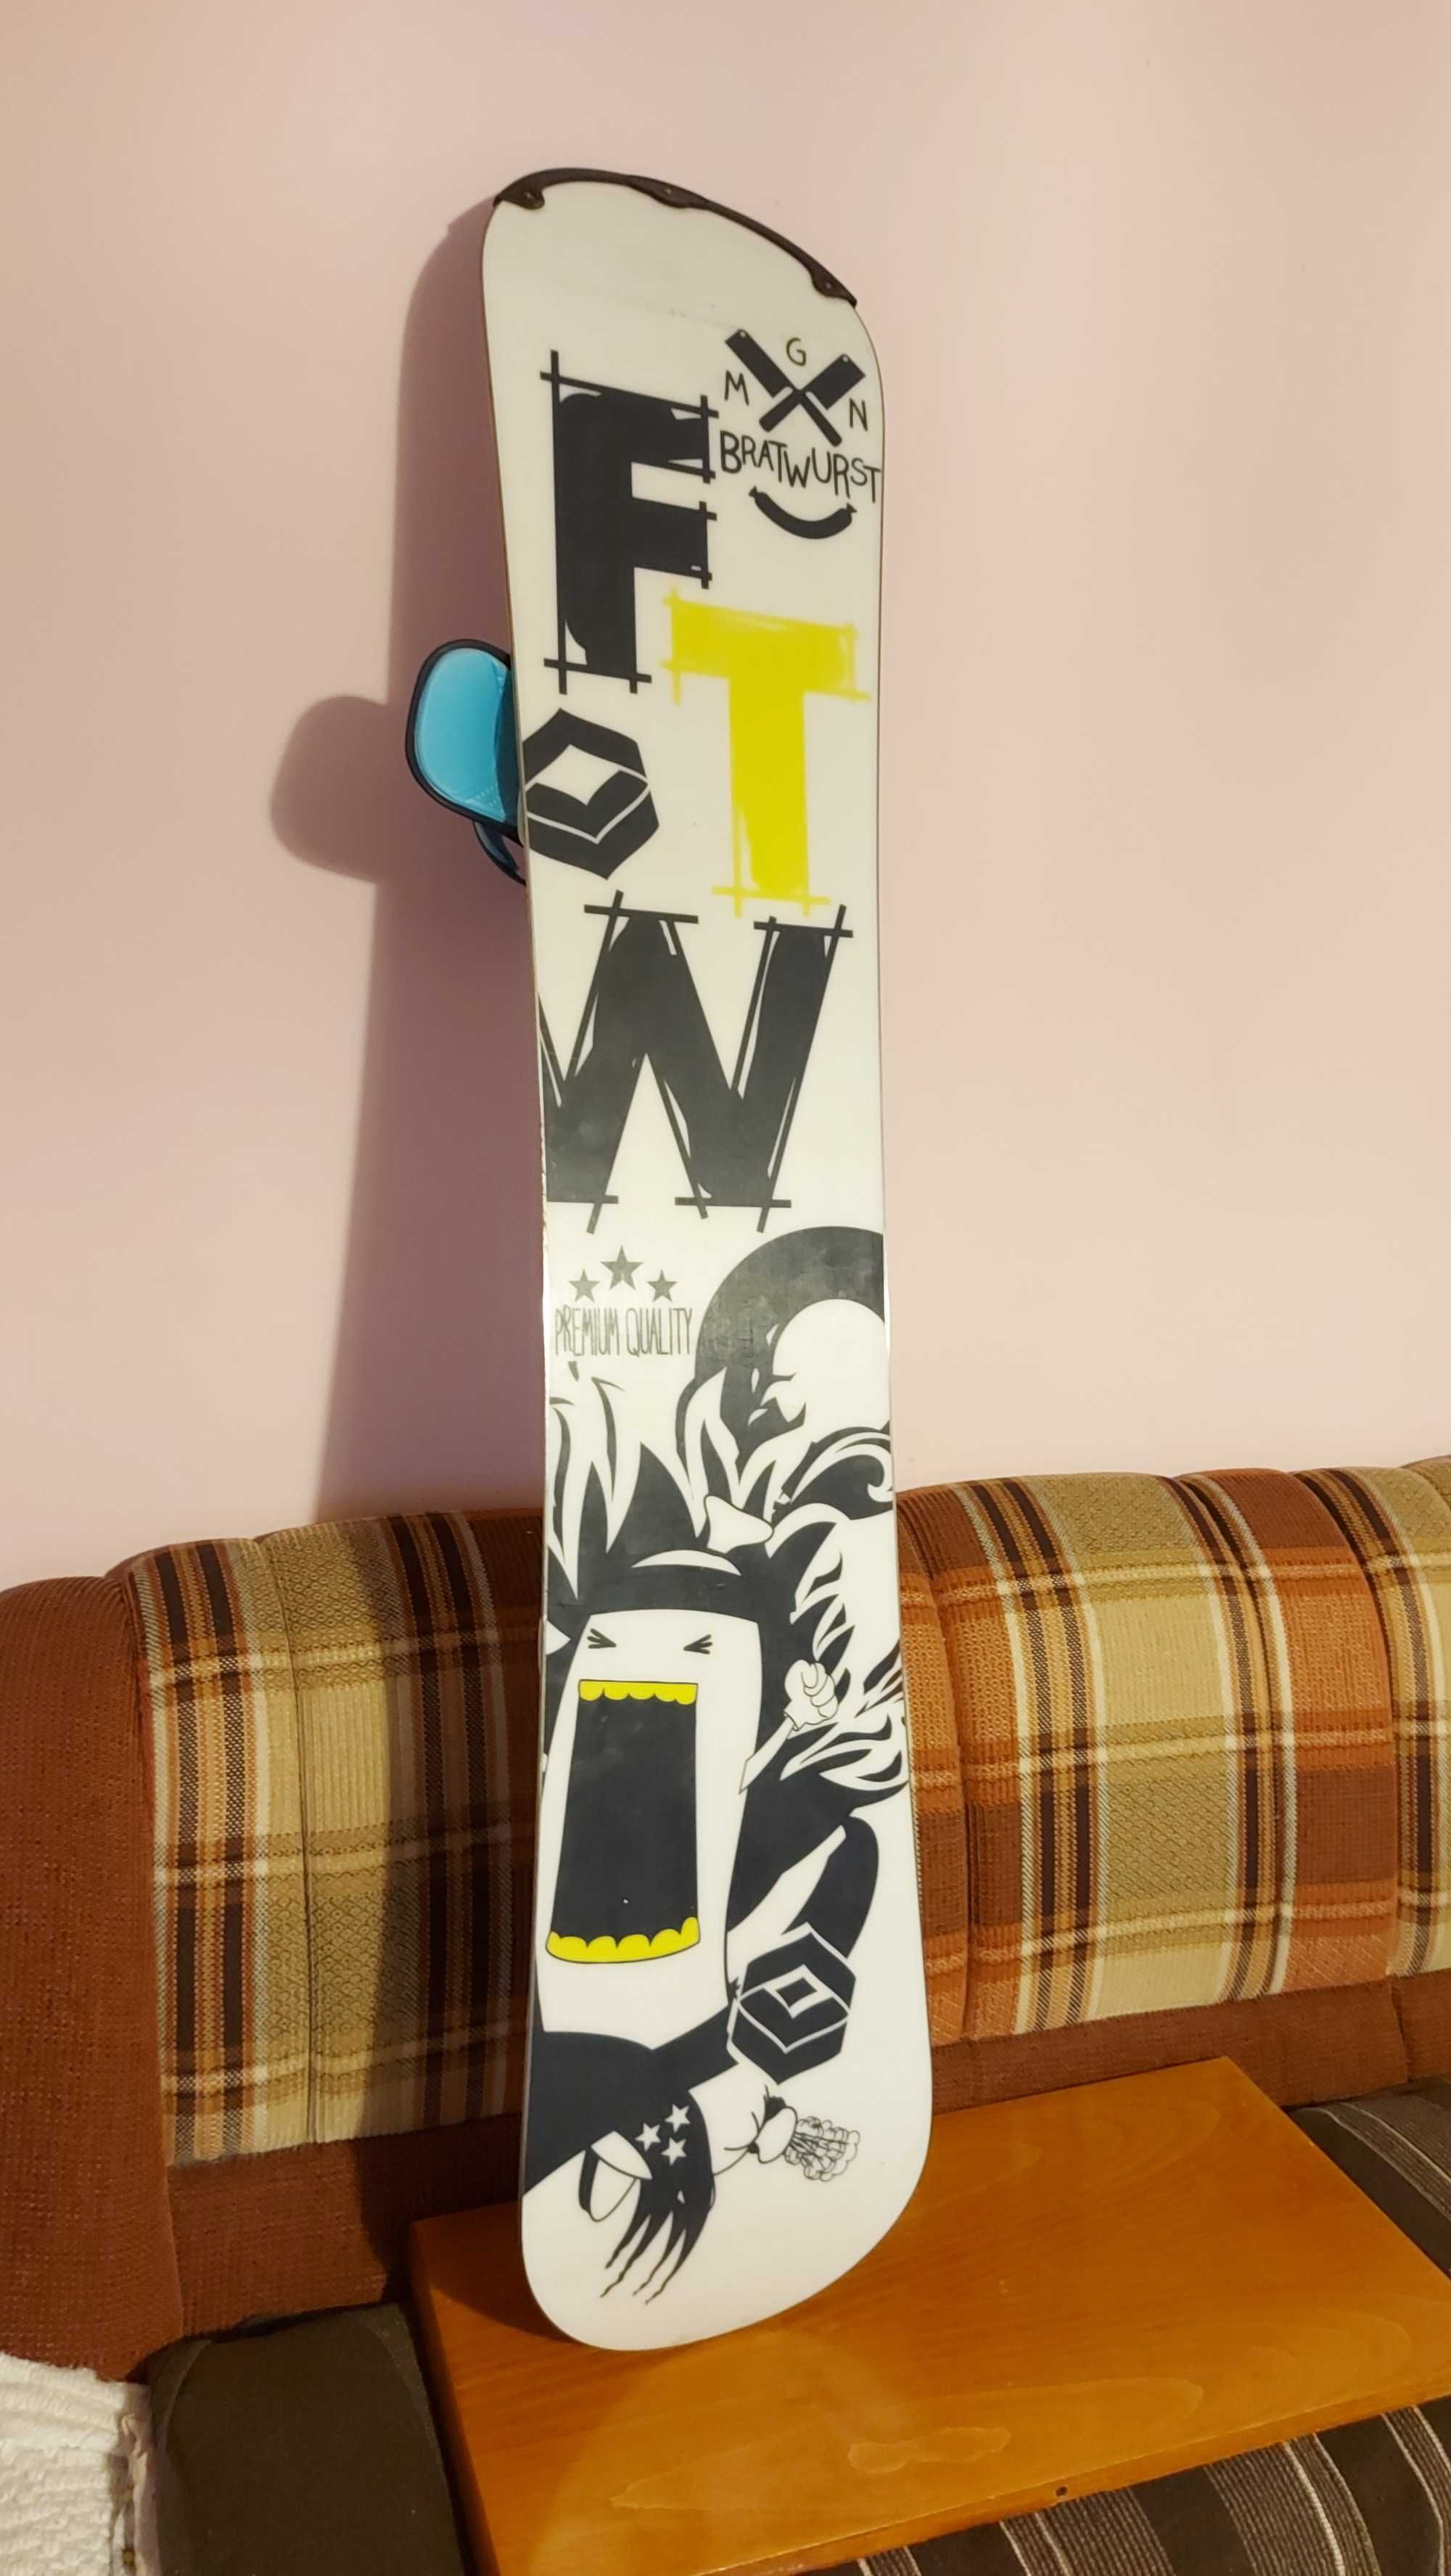 Placa snowboard TNT adulti 150 cm cu legaturi